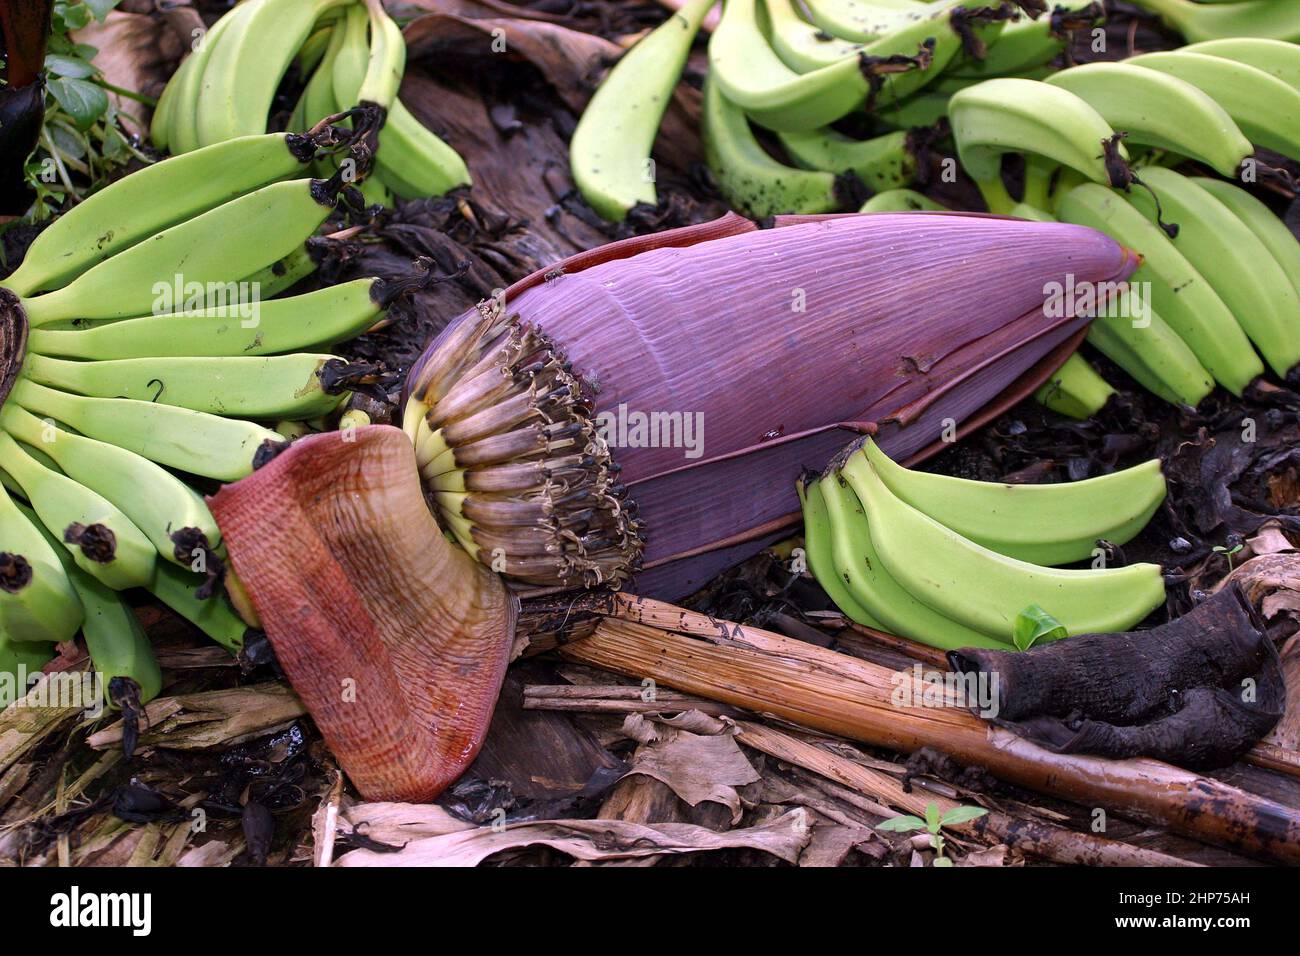 Banana pianta ad una piantagione biologica di banane del commercio equo e solidale Ghana Africa occidentale Foto Stock